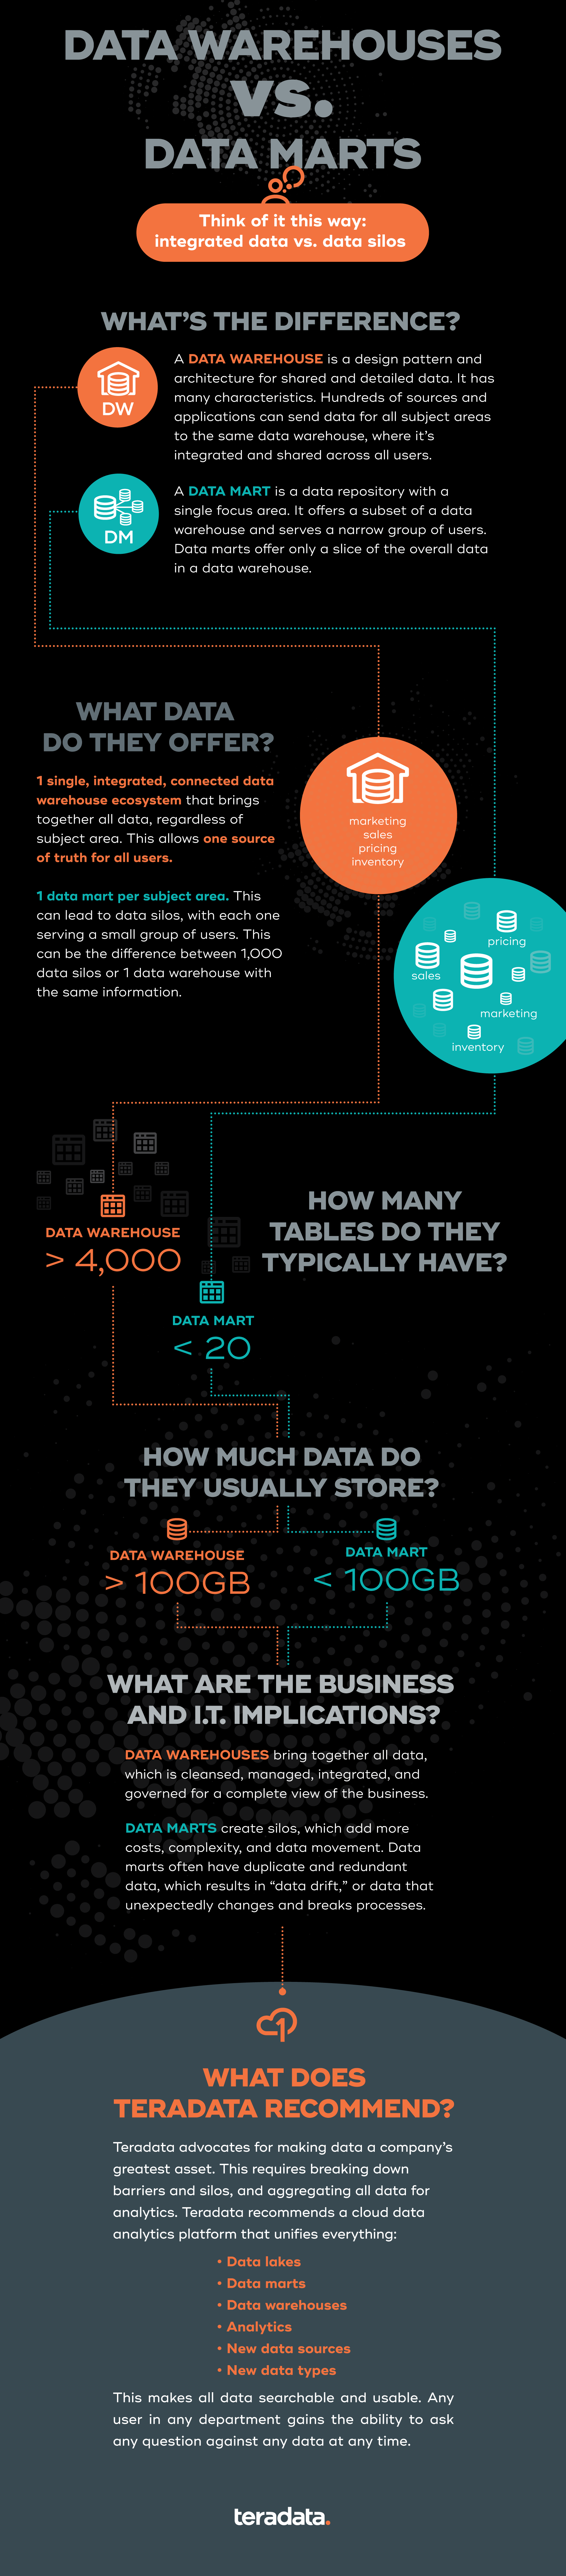 data warehouse vs data mart comparison infographic